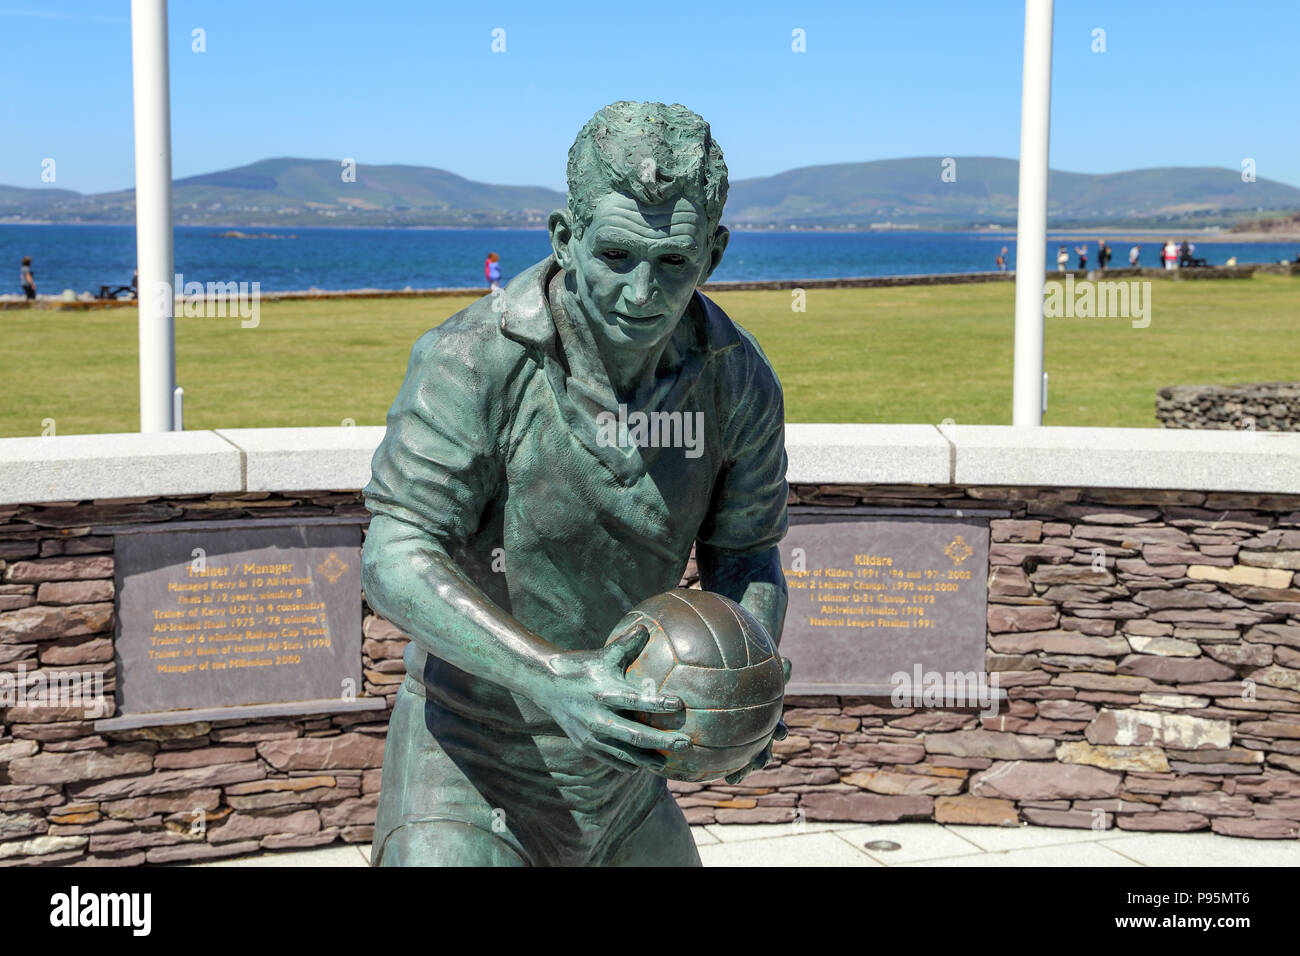 La statua in bronzo del famoso Gaelic calciatore e allenatore Mike O'Dwyer sul lungomare di Waterville, Irlanda, nella contea di Kerry. Foto Stock